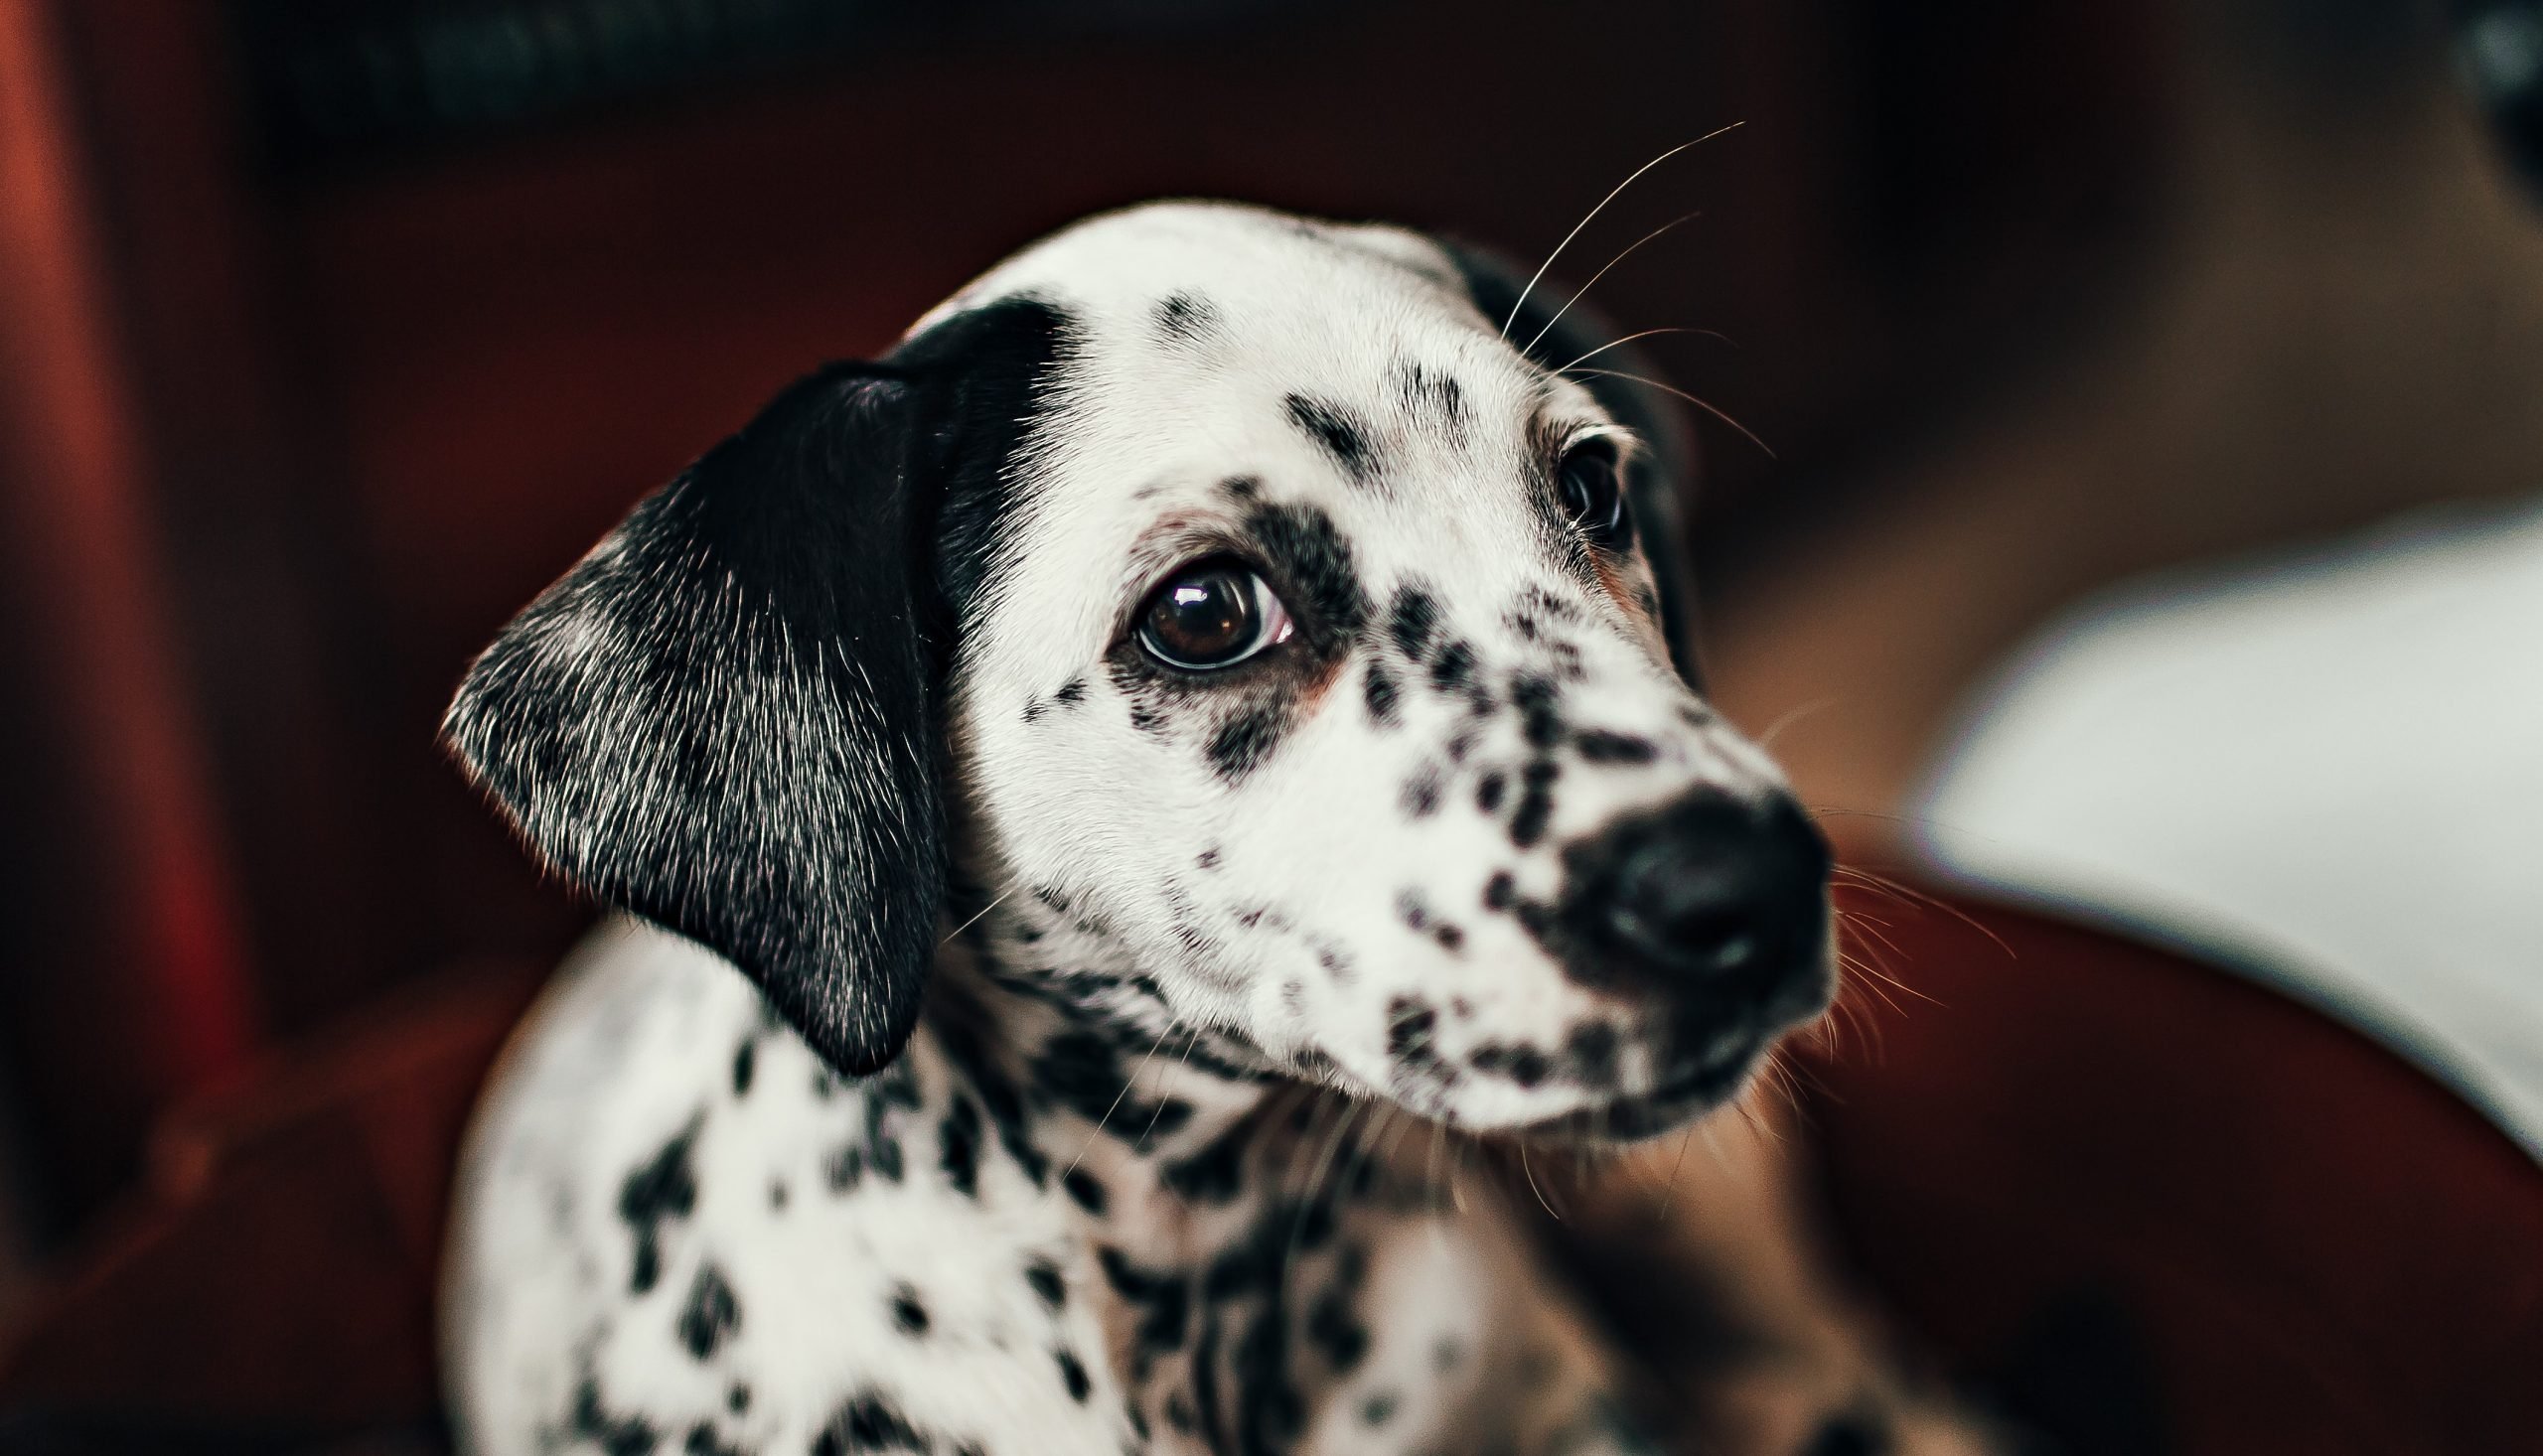 Qué significan las legañas en un perro cachorro? Blog